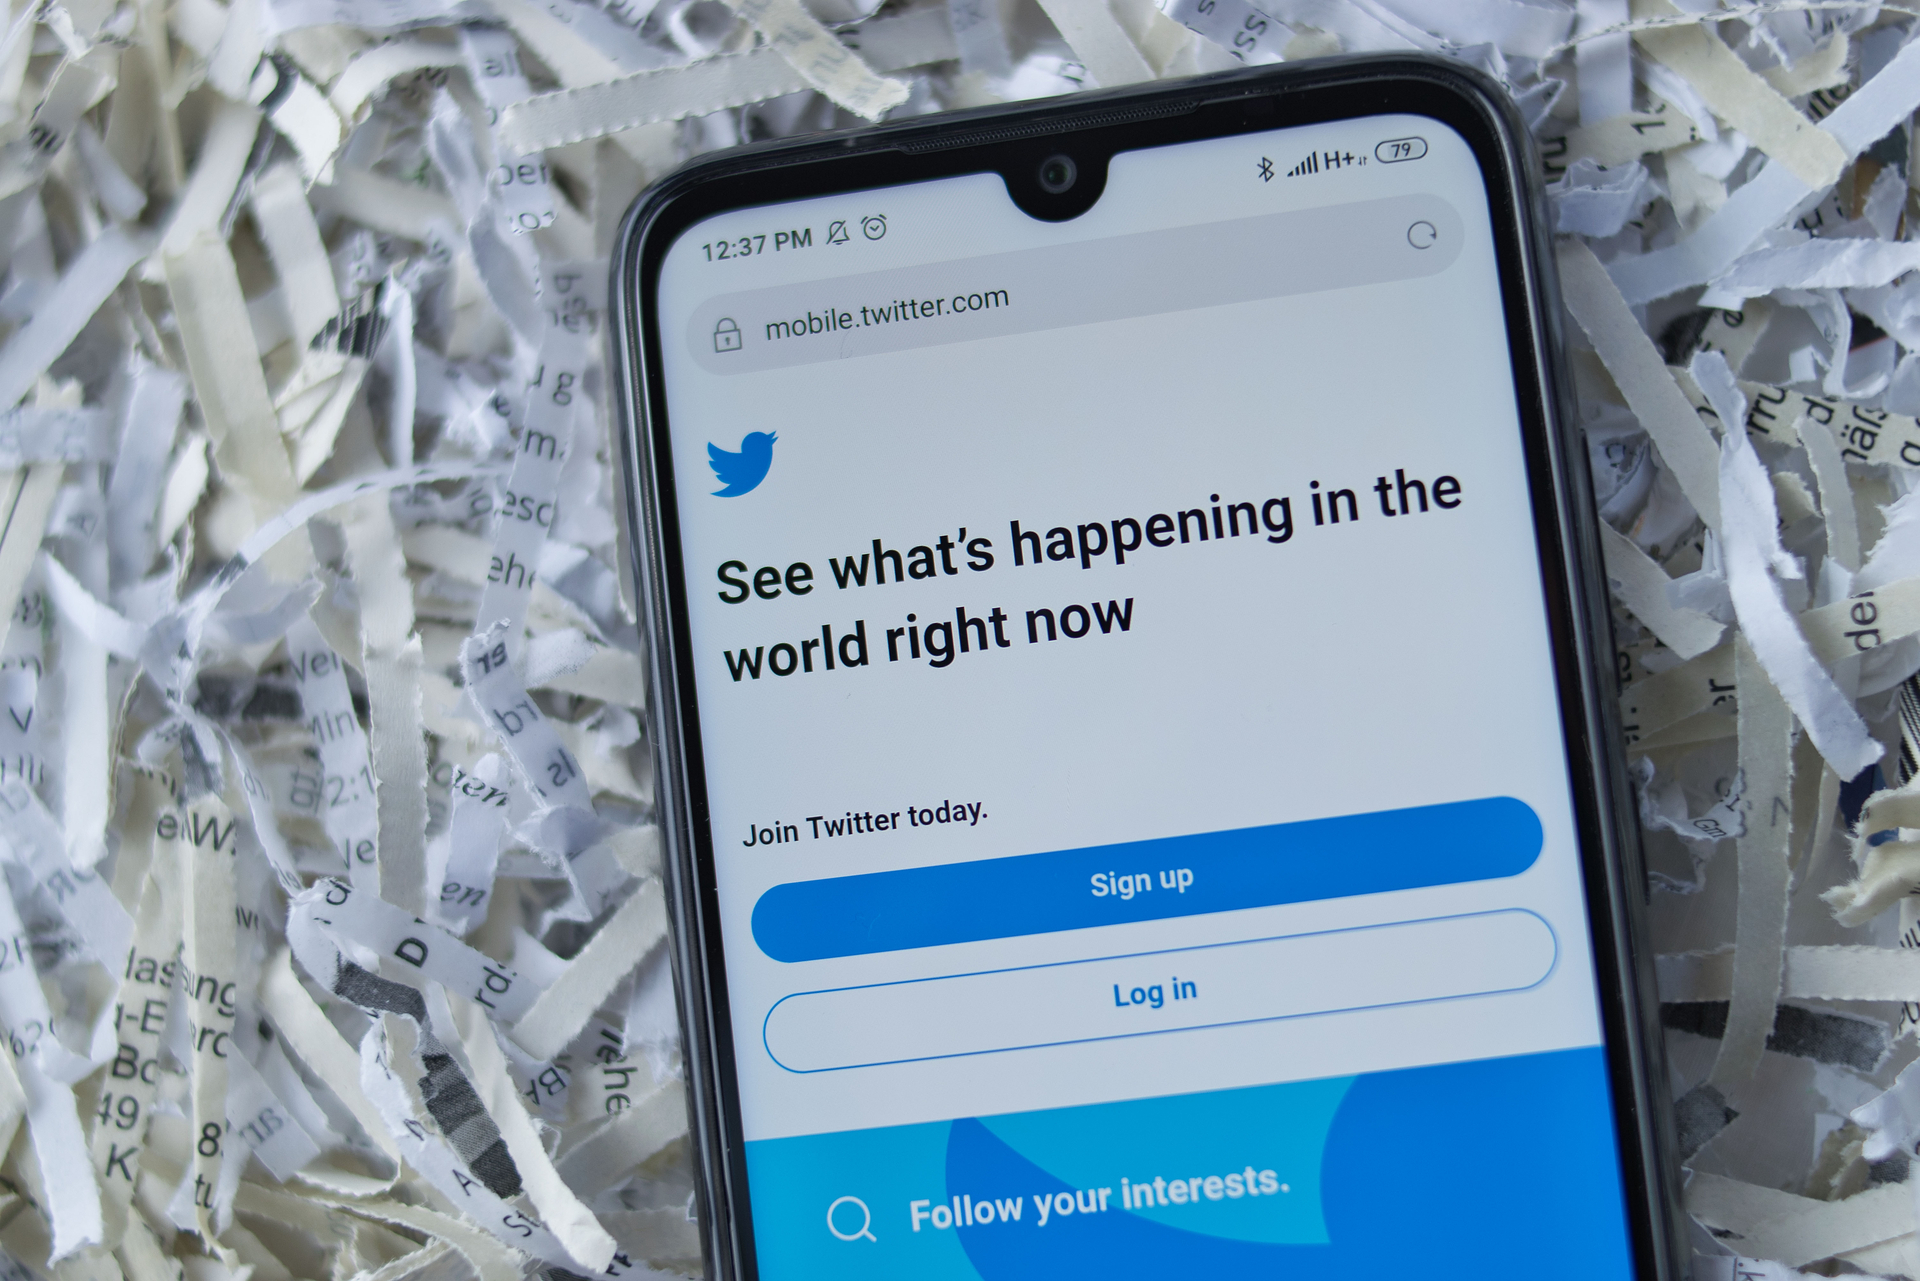 Geschredderte Wahrheiten: Twitter ging auf eigentümliche Weise gegen politisch unangenehme Meinungen vor